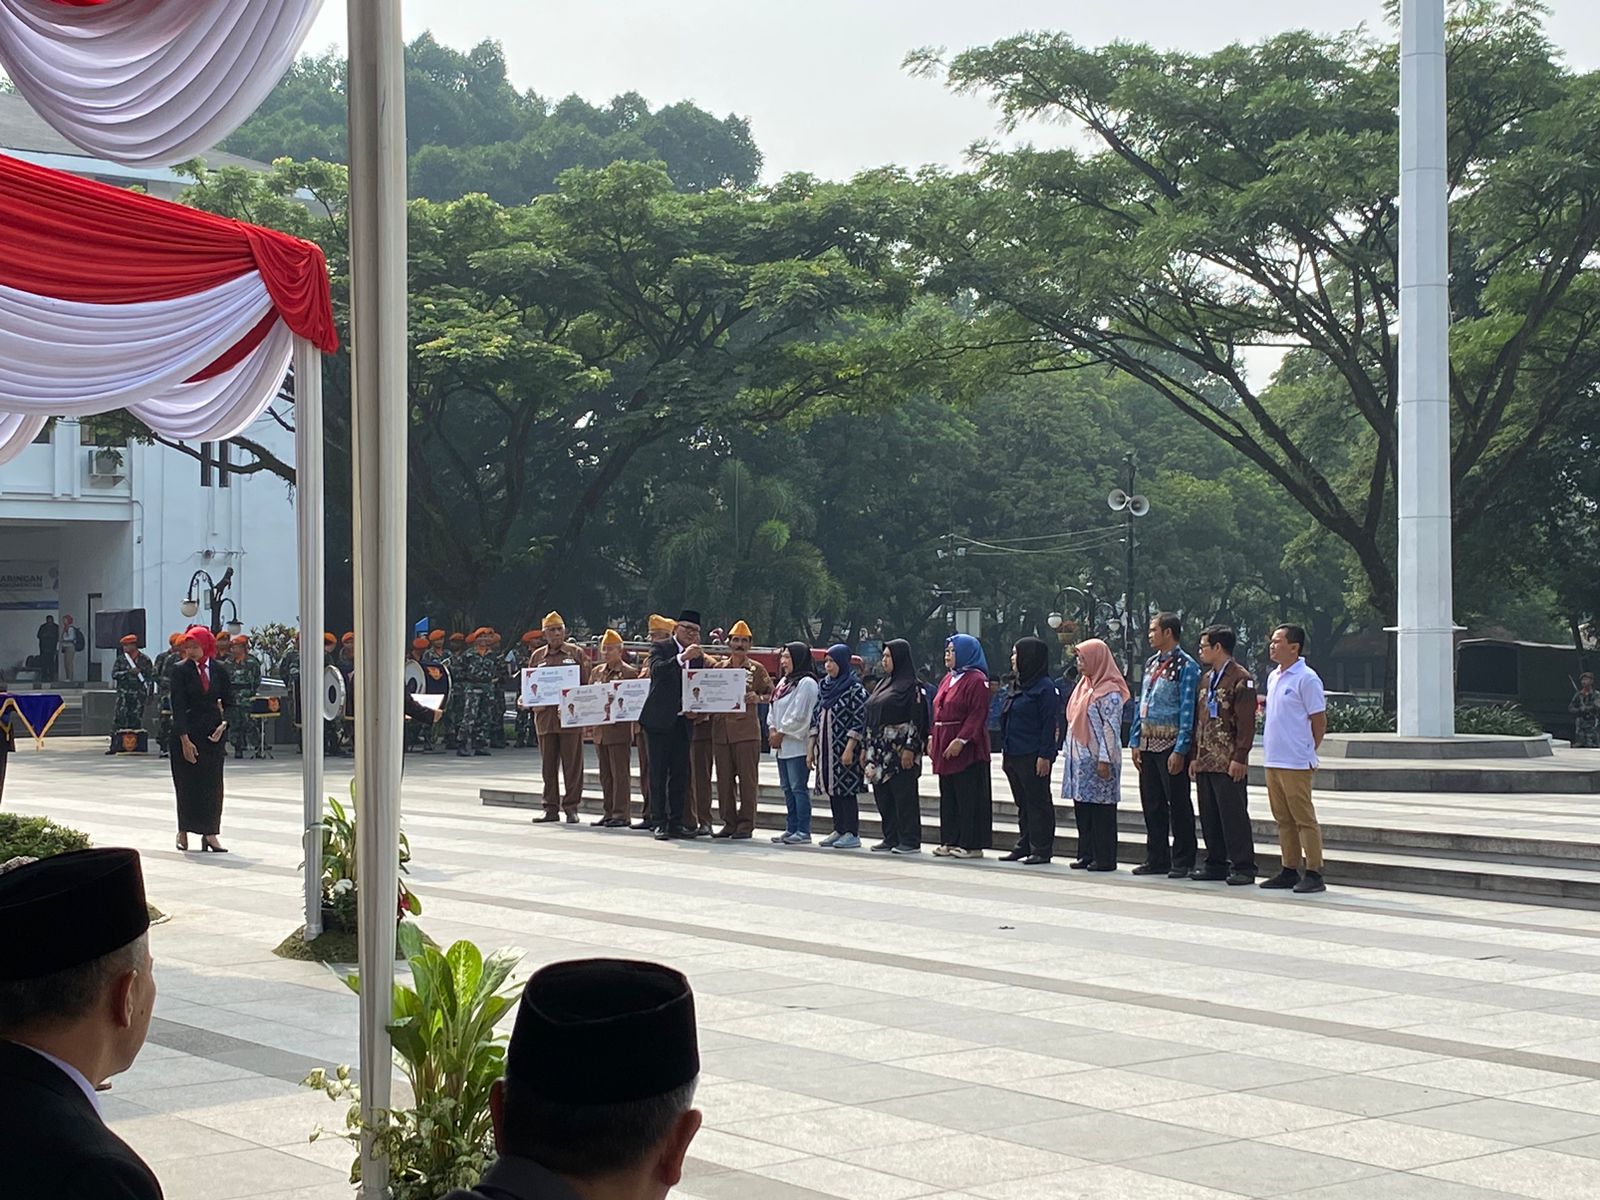 SUASANA: Peringatan Hari Sumpah Pemuda di Plaza Balaikota Bandung, pada Jumat (10/11). (Nizar/Jabarekspres)